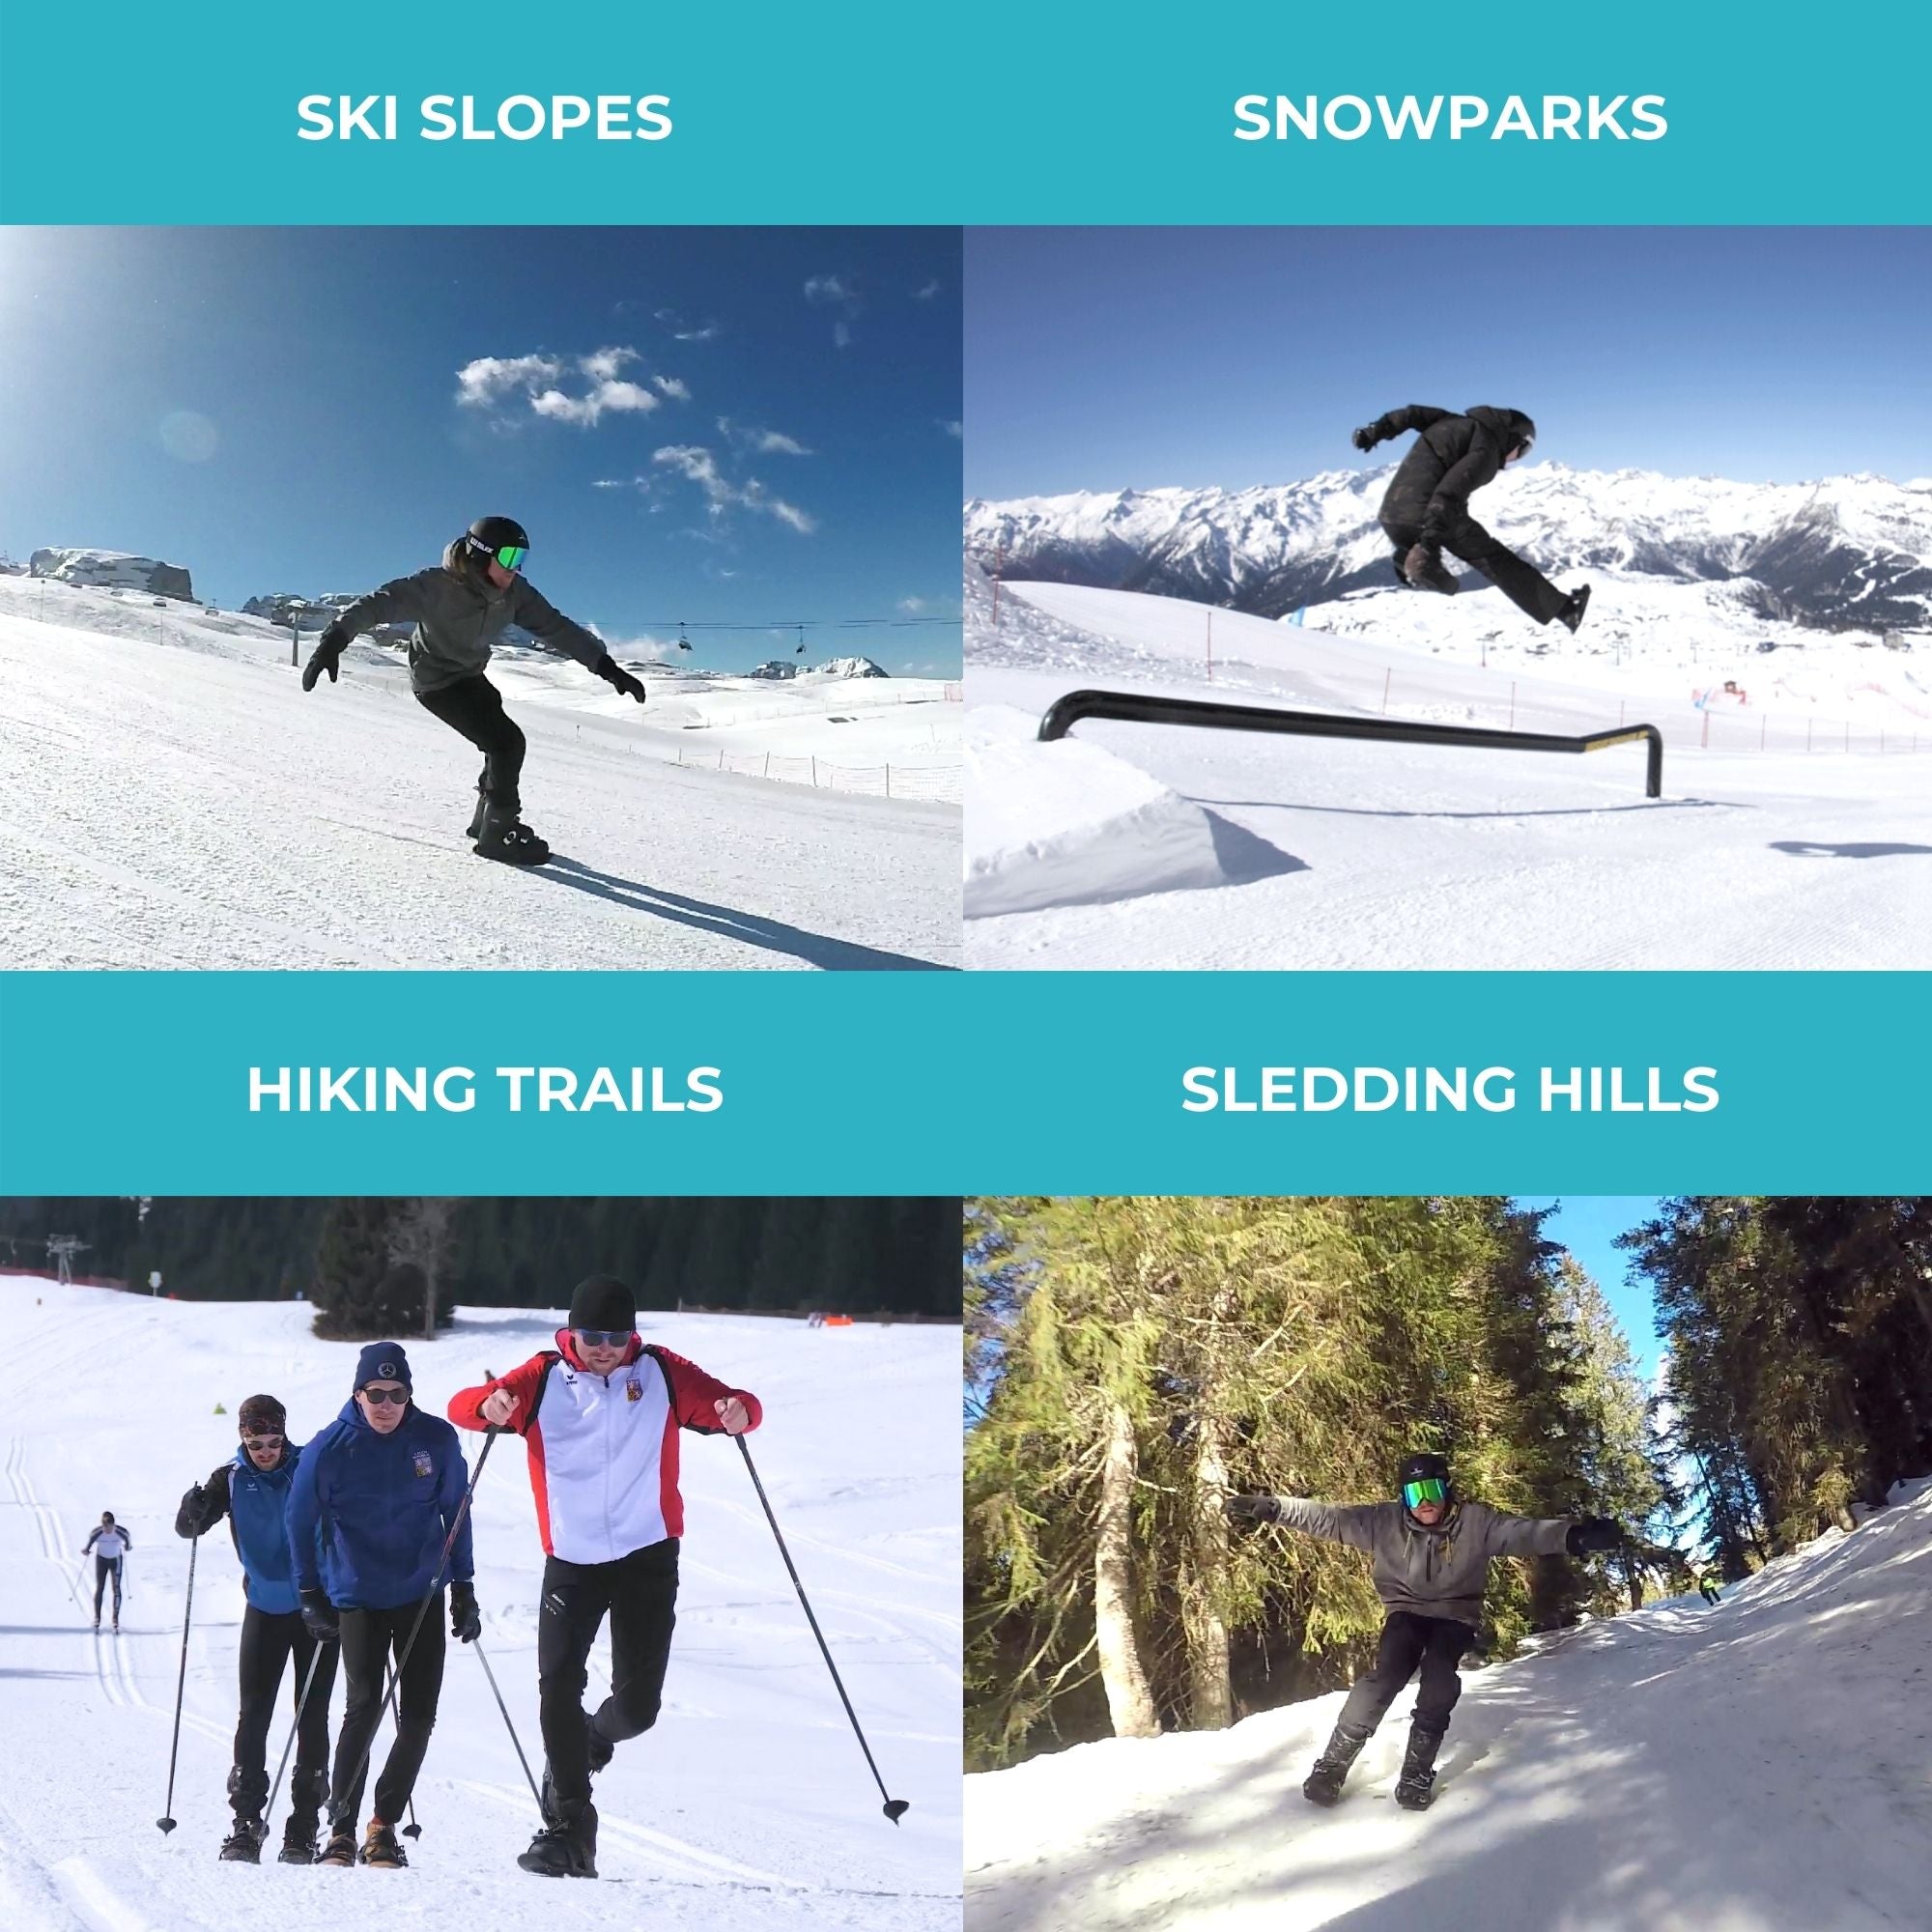 Snowfeet* X | Mini Ski Skates